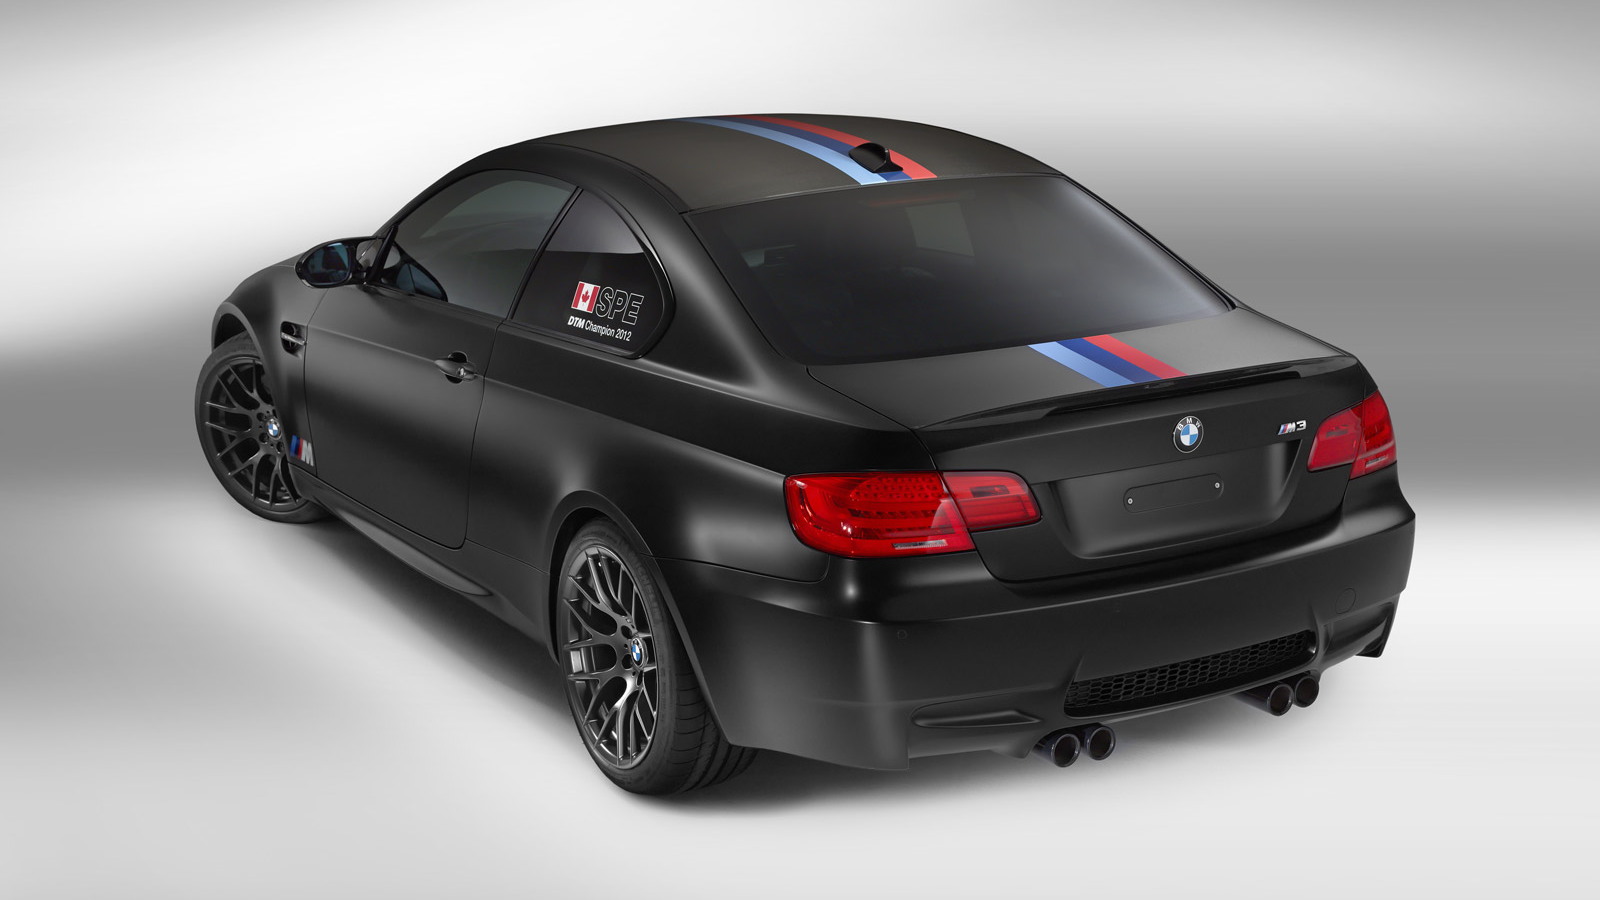 2013 BMW M3 Coupe DTM Champion Edition